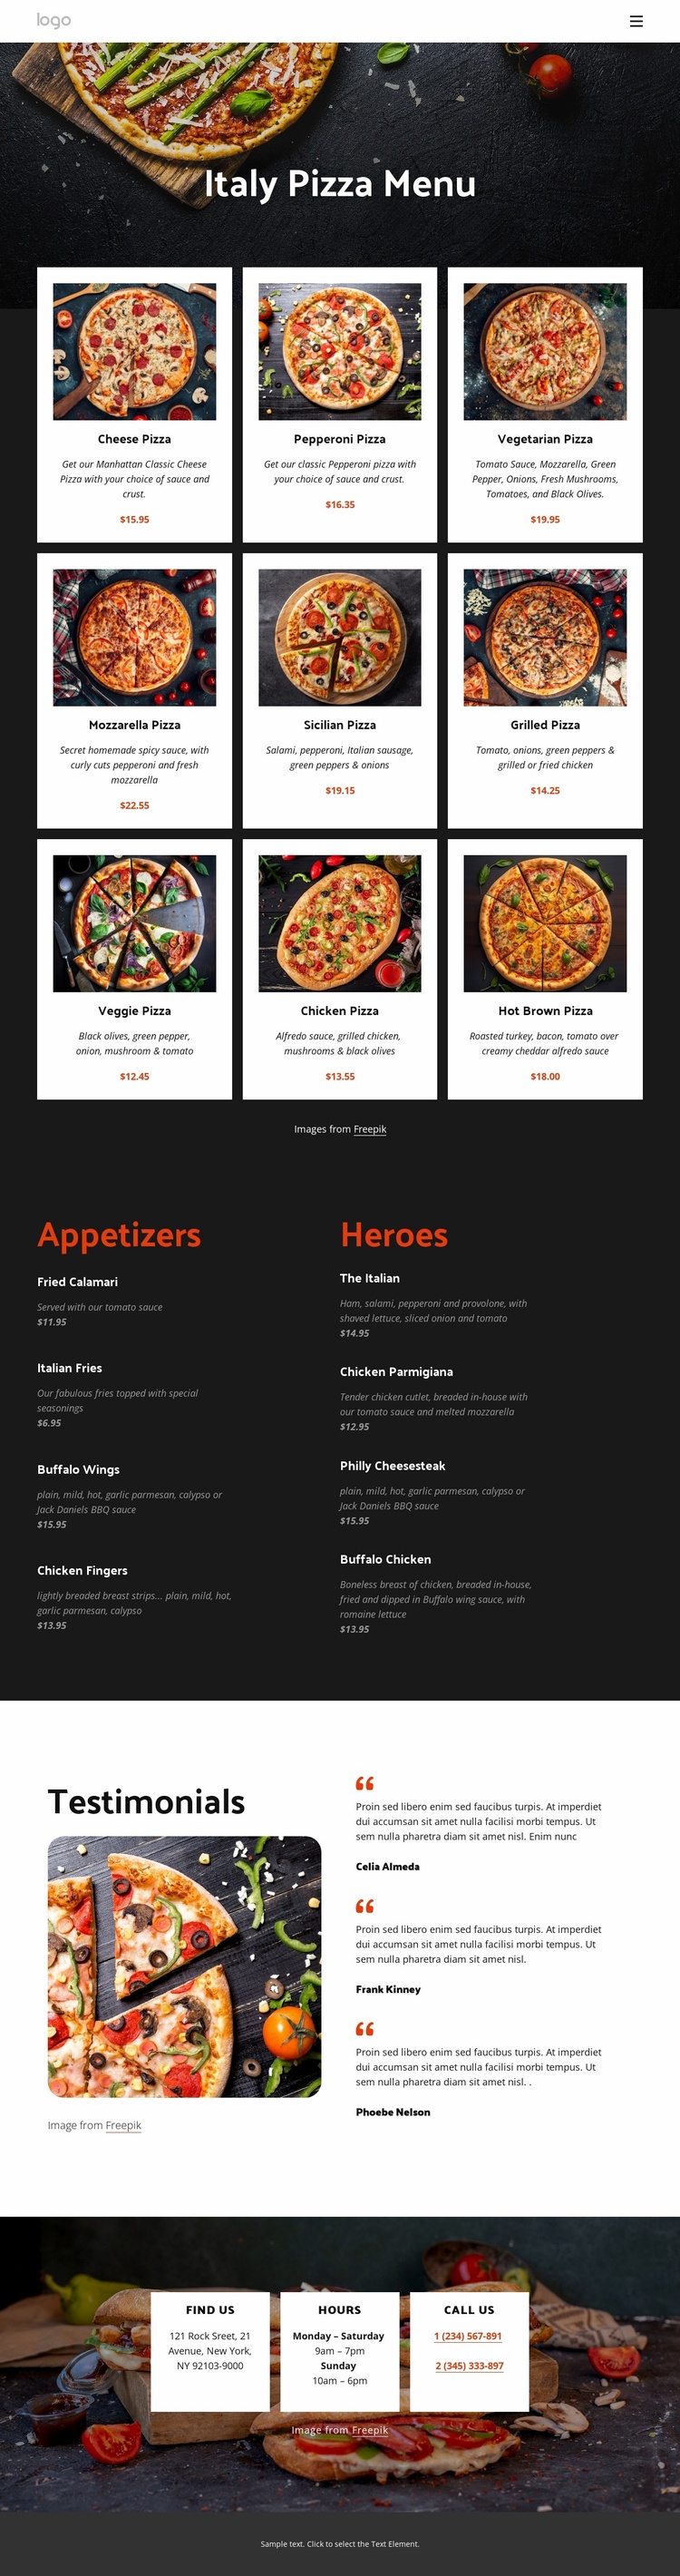 Our pizza menu Landing Page